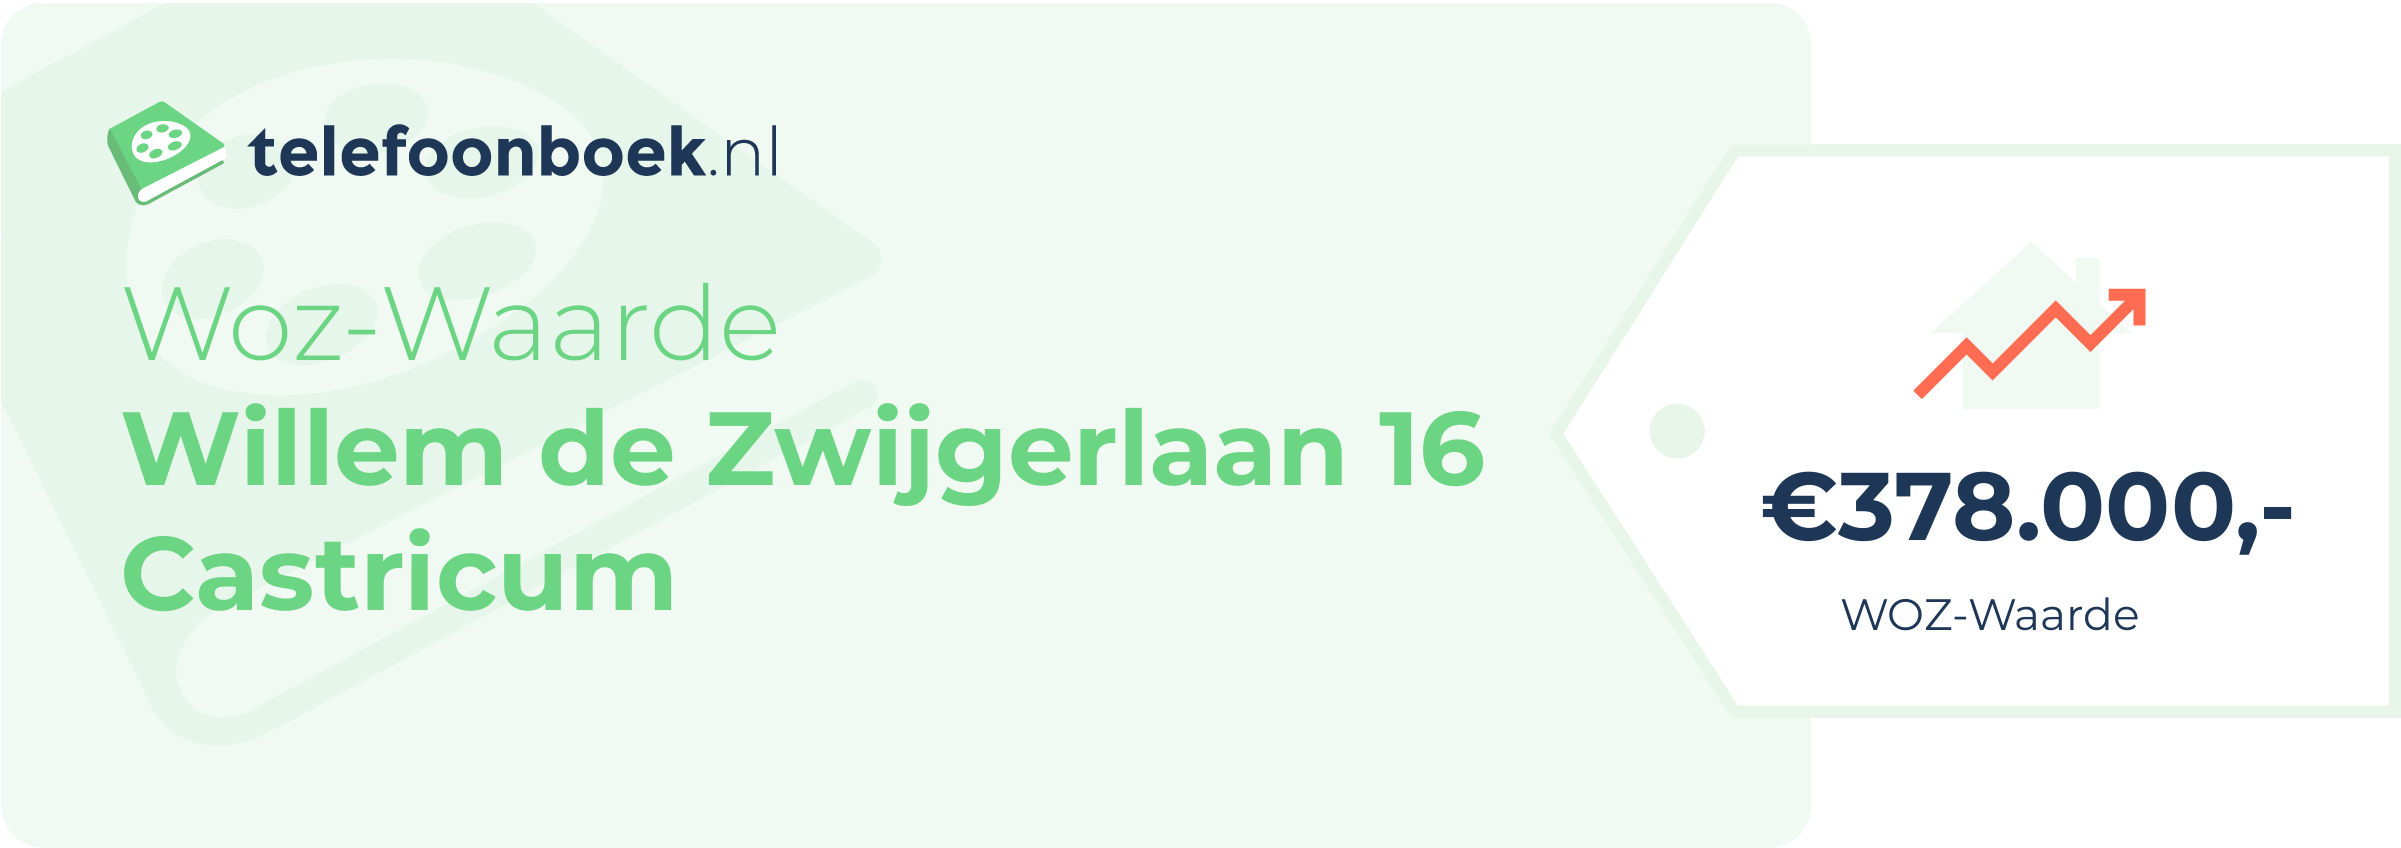 WOZ-waarde Willem De Zwijgerlaan 16 Castricum